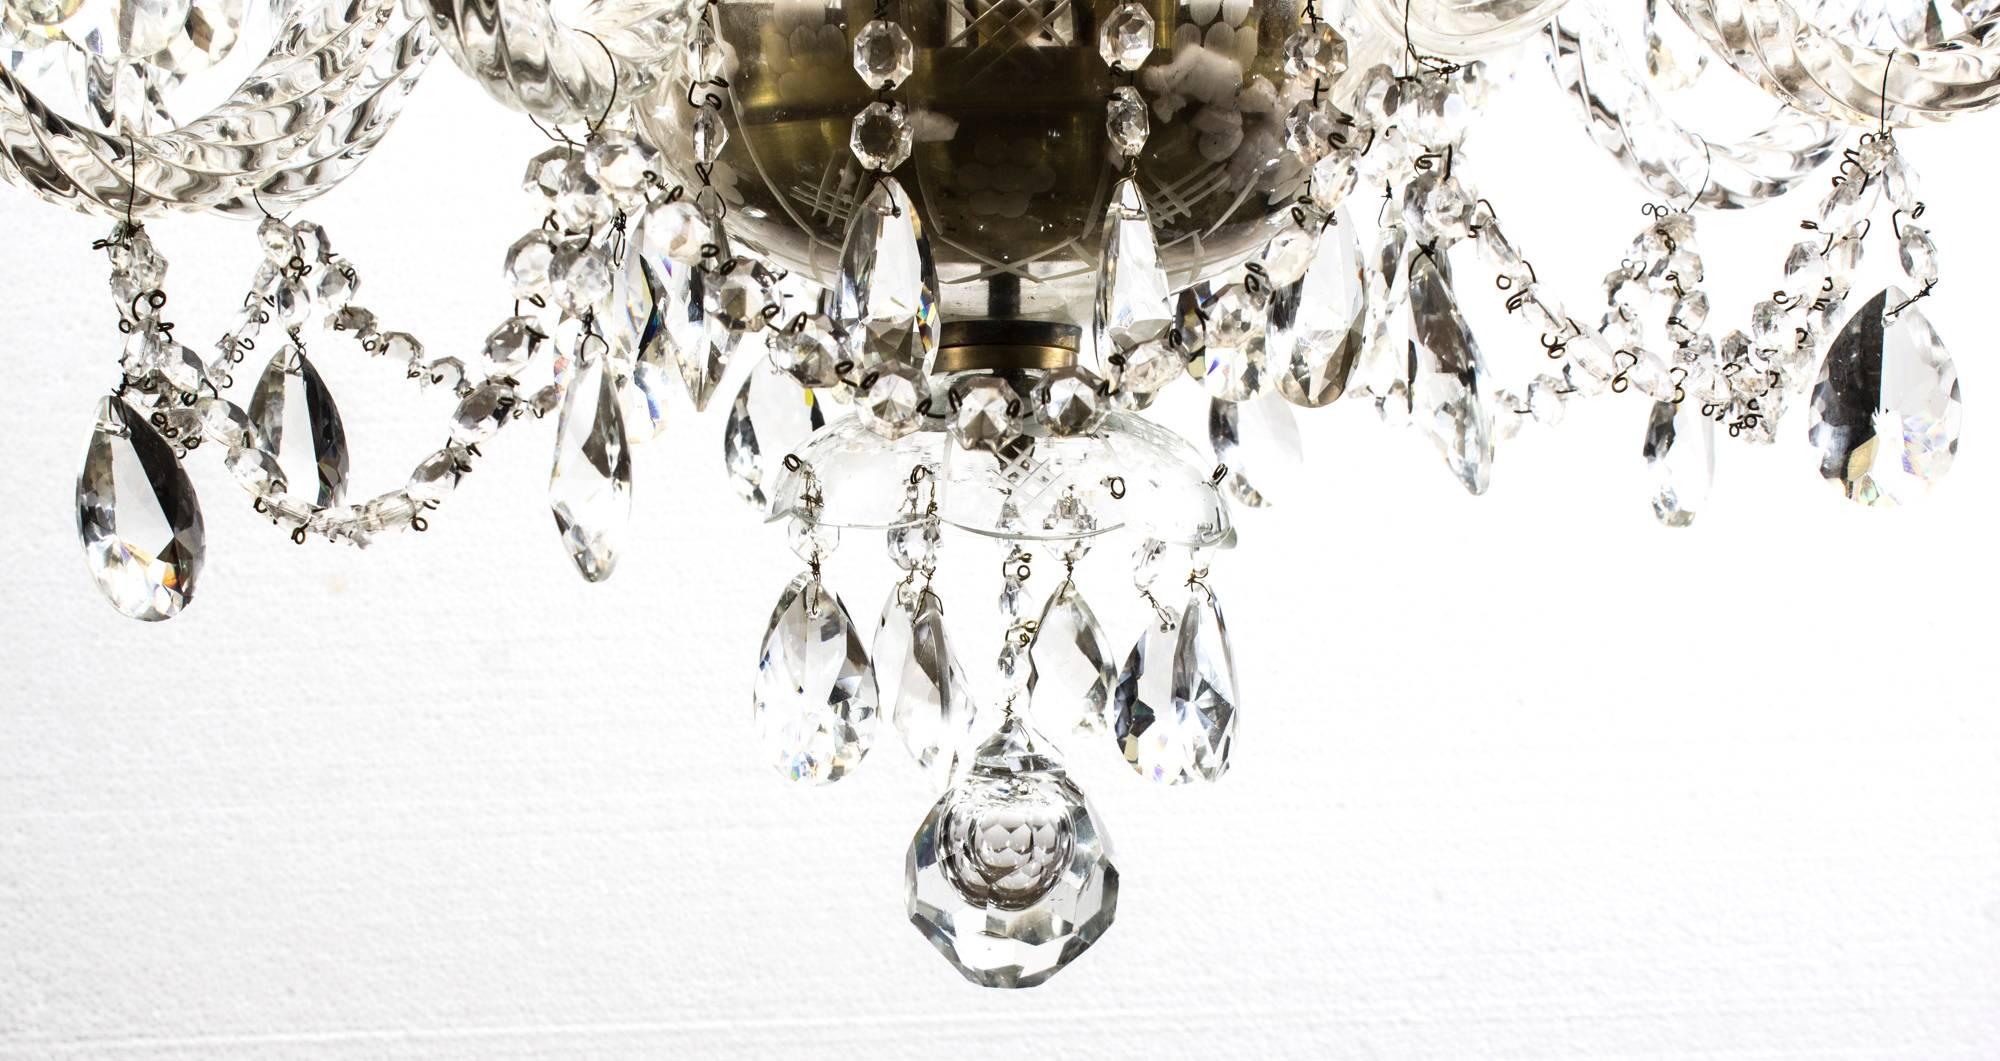 Dies ist ein wunderschöner zweistöckiger Kristallkronleuchter im venezianischen Stil mit 12 Lichtern und schönen klaren Kristalltropfen, der aus der zweiten Hälfte des 20. Jahrhunderts stammt.

Auf der oberen Ebene befinden sich vier Lichter, auf